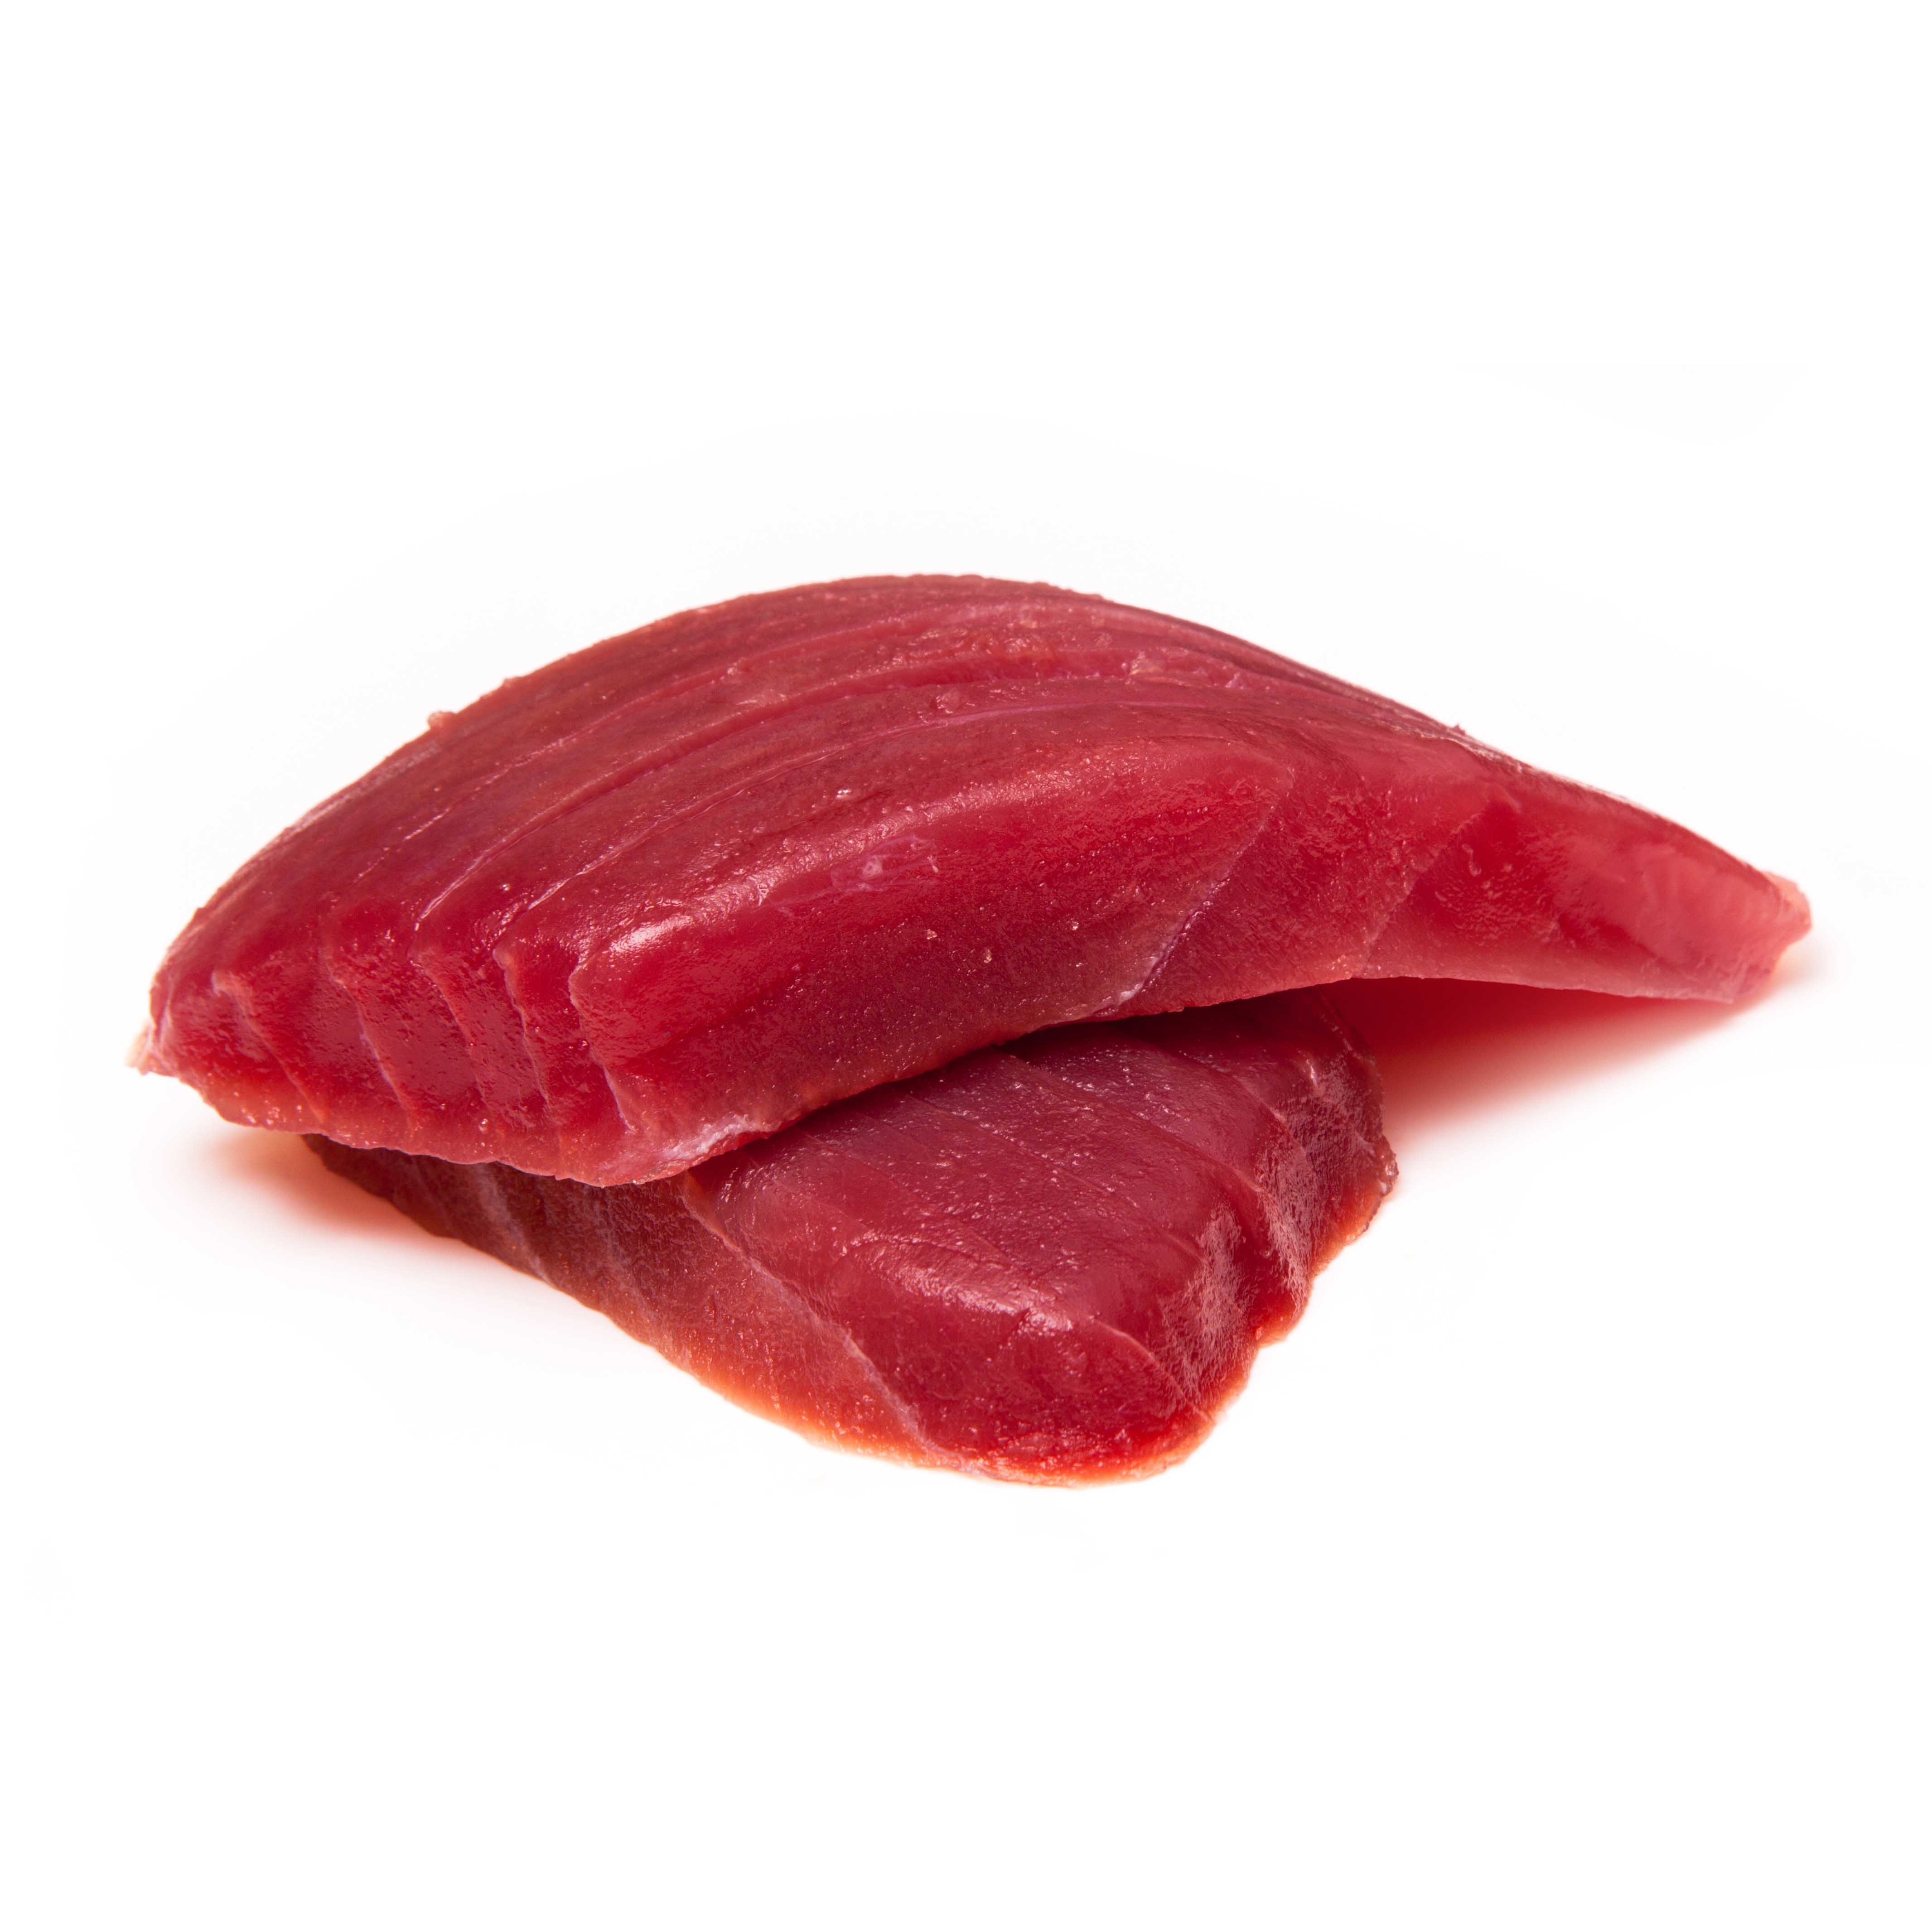 急凍夏威夷黃鰭吞拿魚(Yellowfin Tuna)